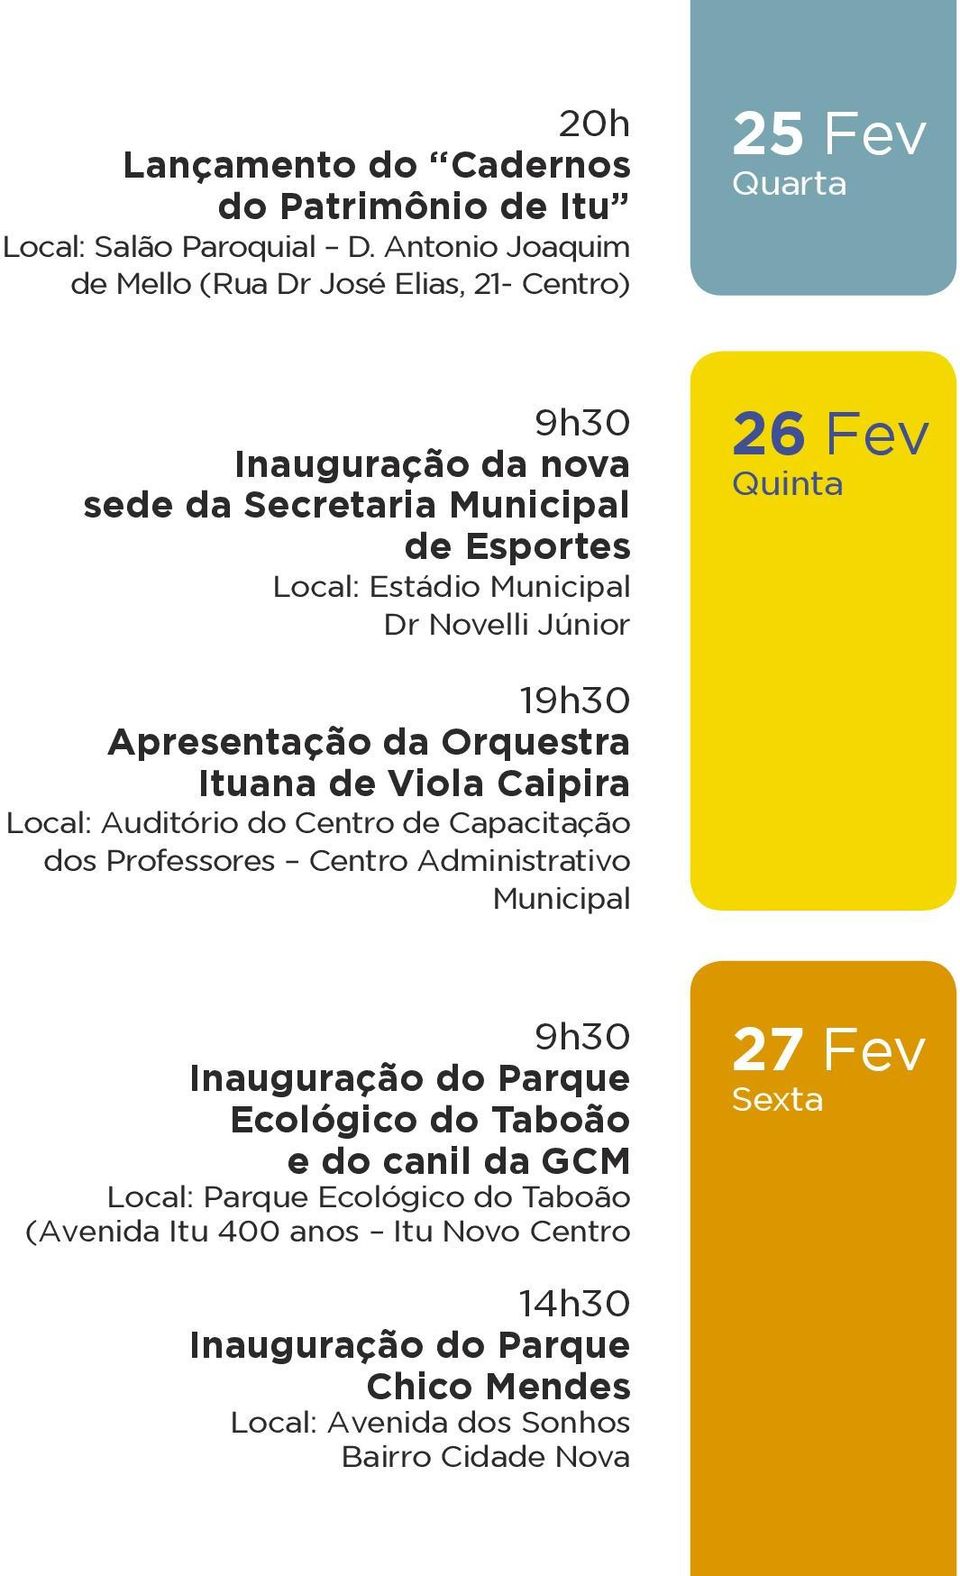 Dr Novelli Júnior 26 Fev Quinta 19h30 Apresentação da Orquestra Ituana de Viola Caipira Local: Auditório do Centro de Capacitação dos Professores Centro